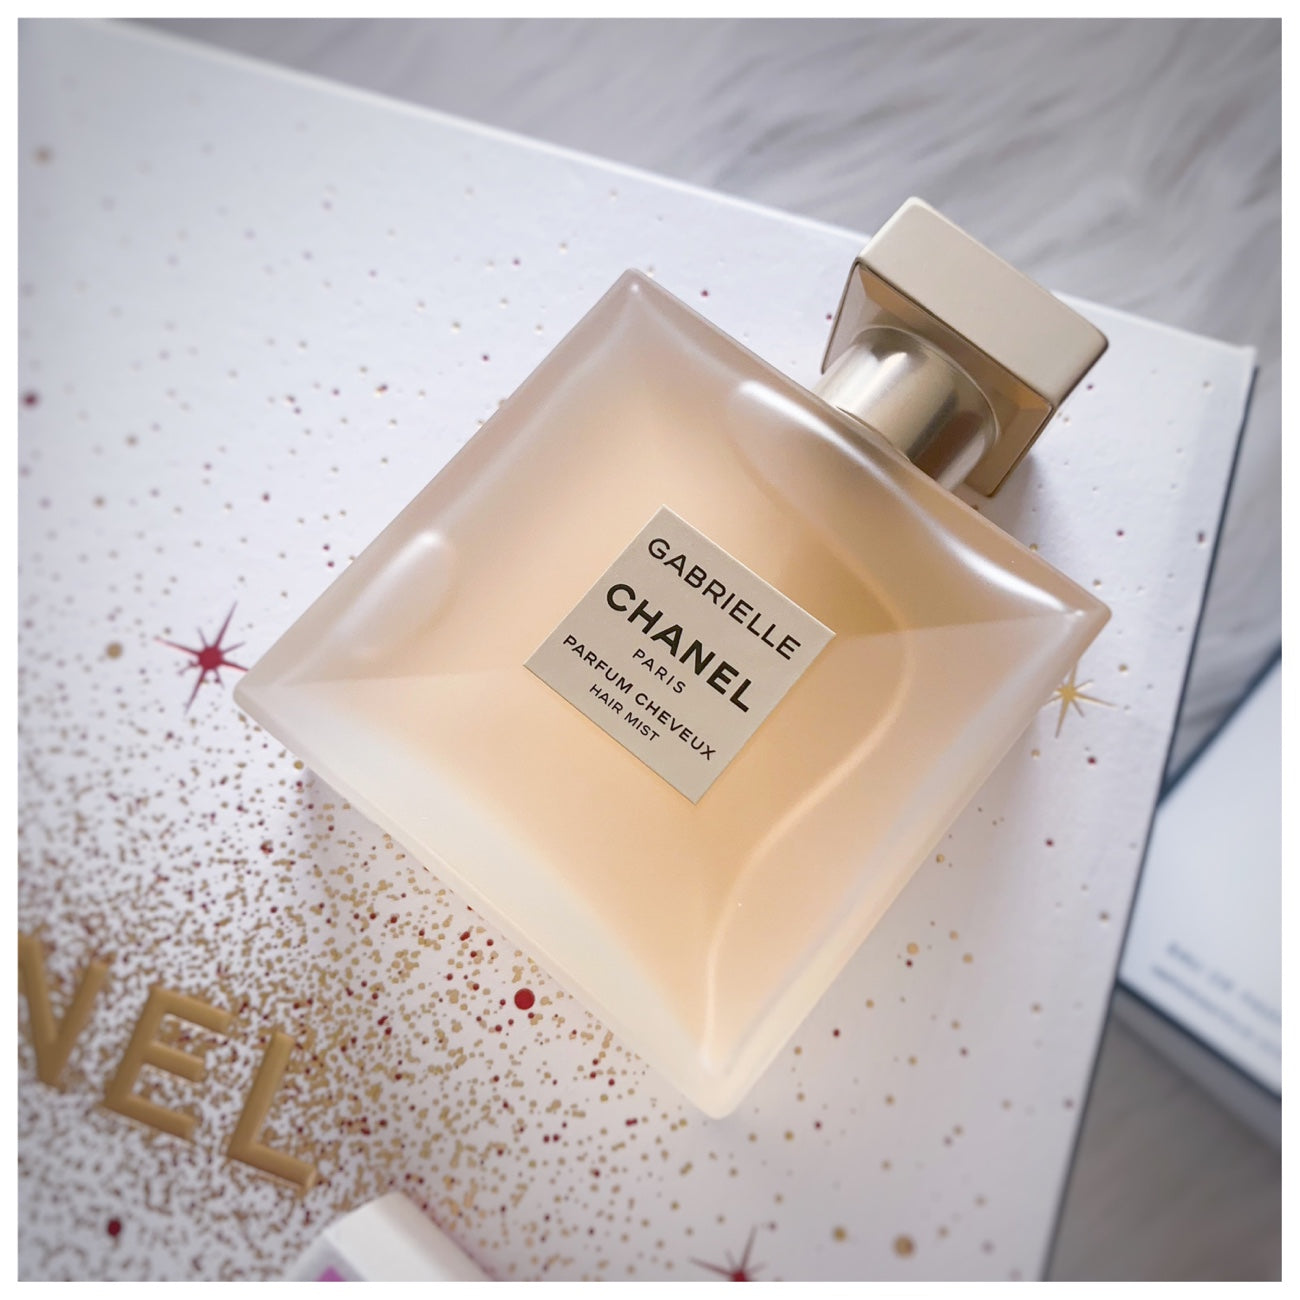 CHANEL Perfume Gabrielle Parfum Cheveux (40 ml) Scent